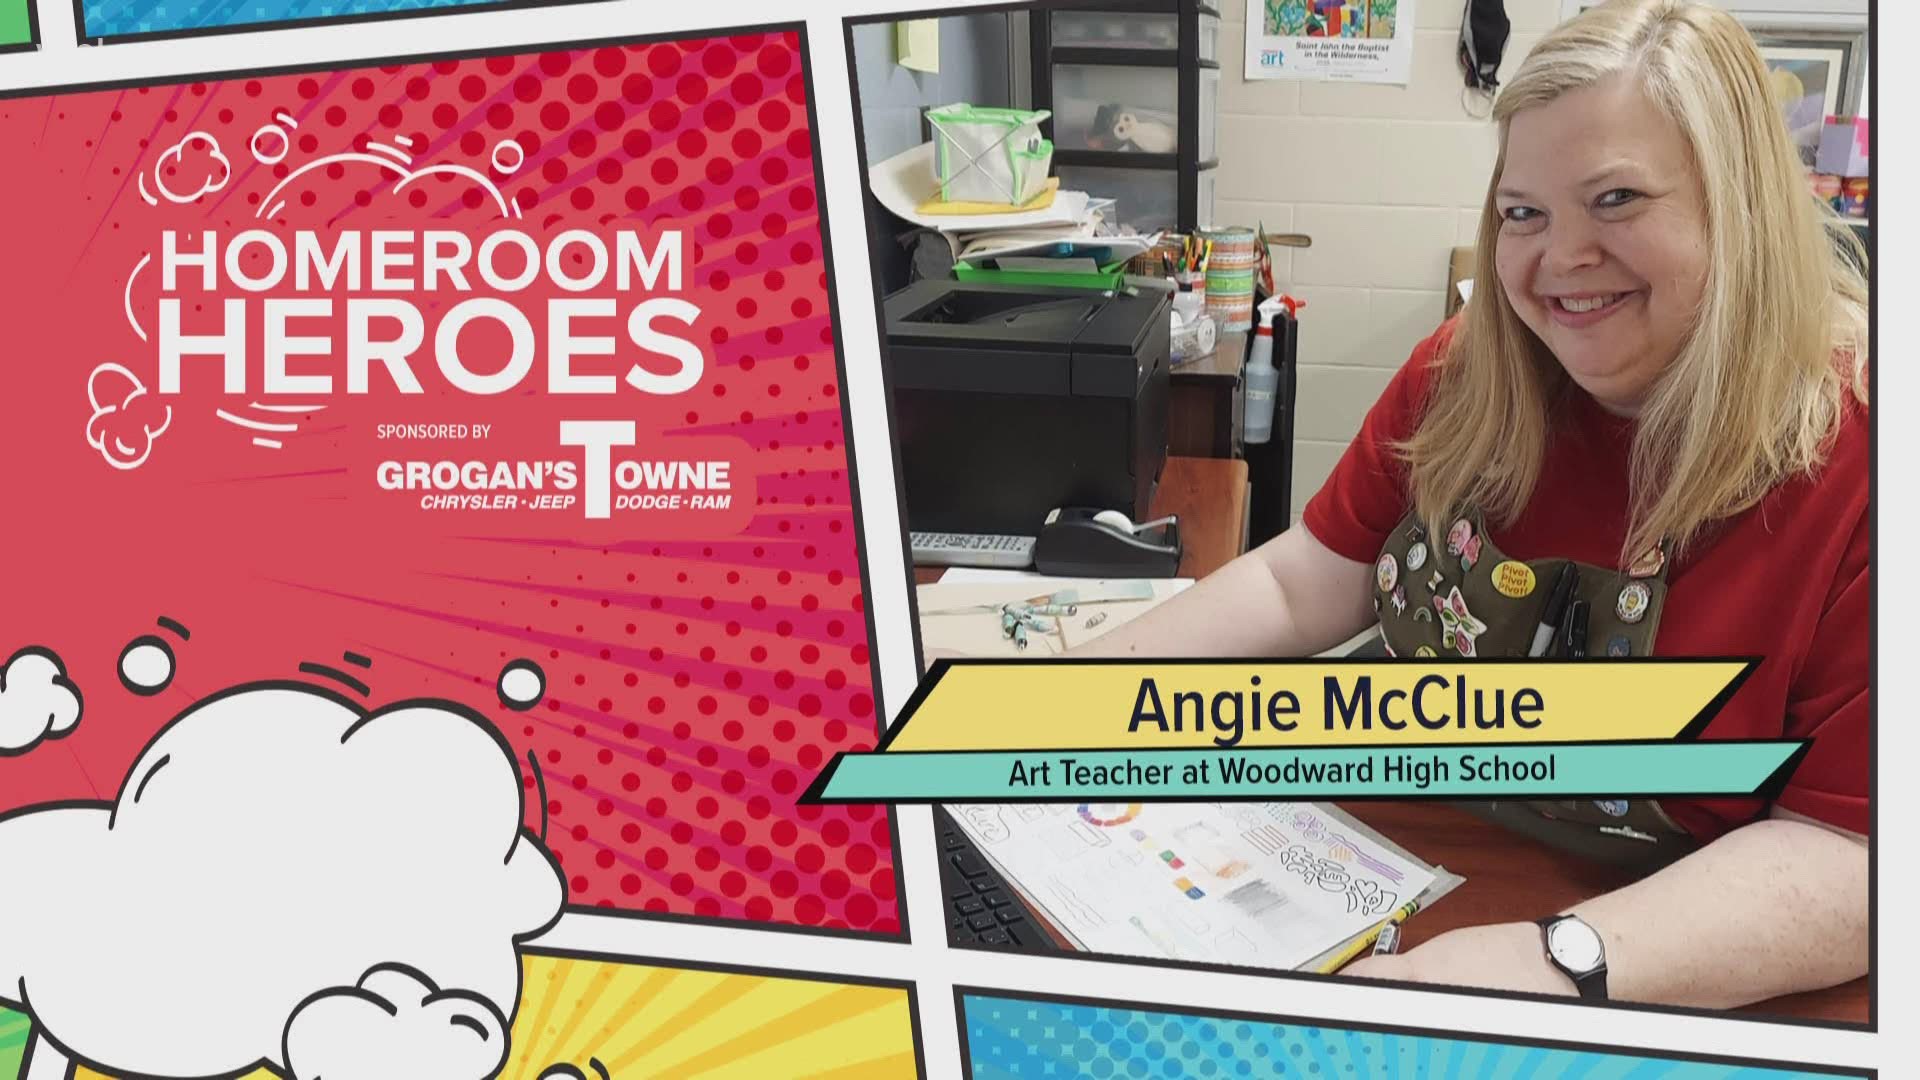 Ms. McClue is an art teacher at Woodward High School